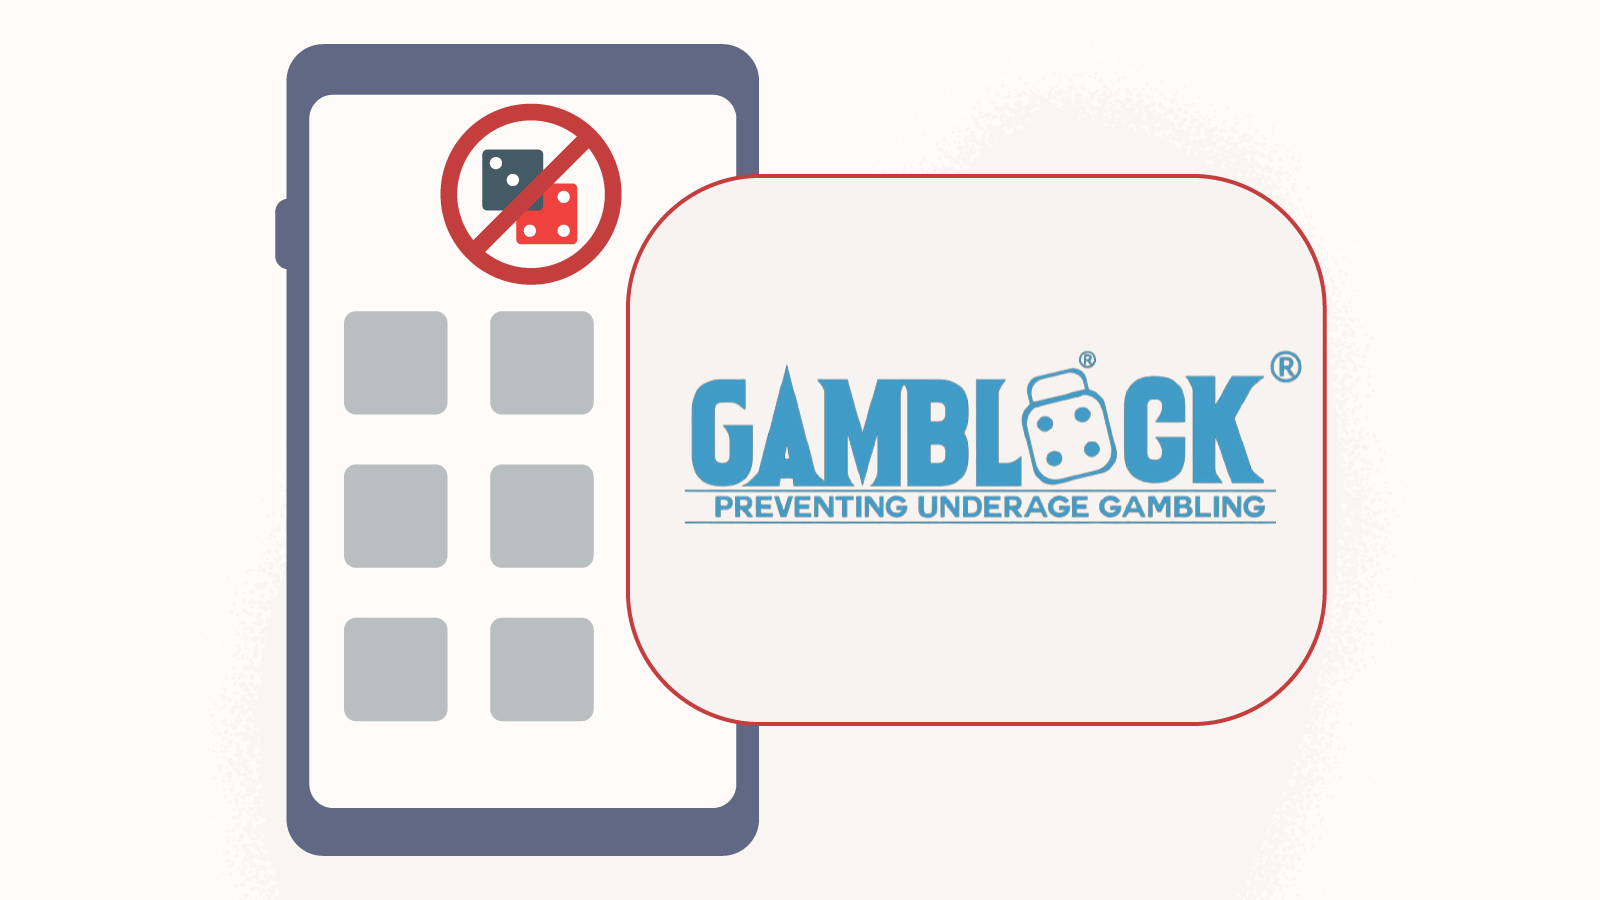 How can GamBlock help